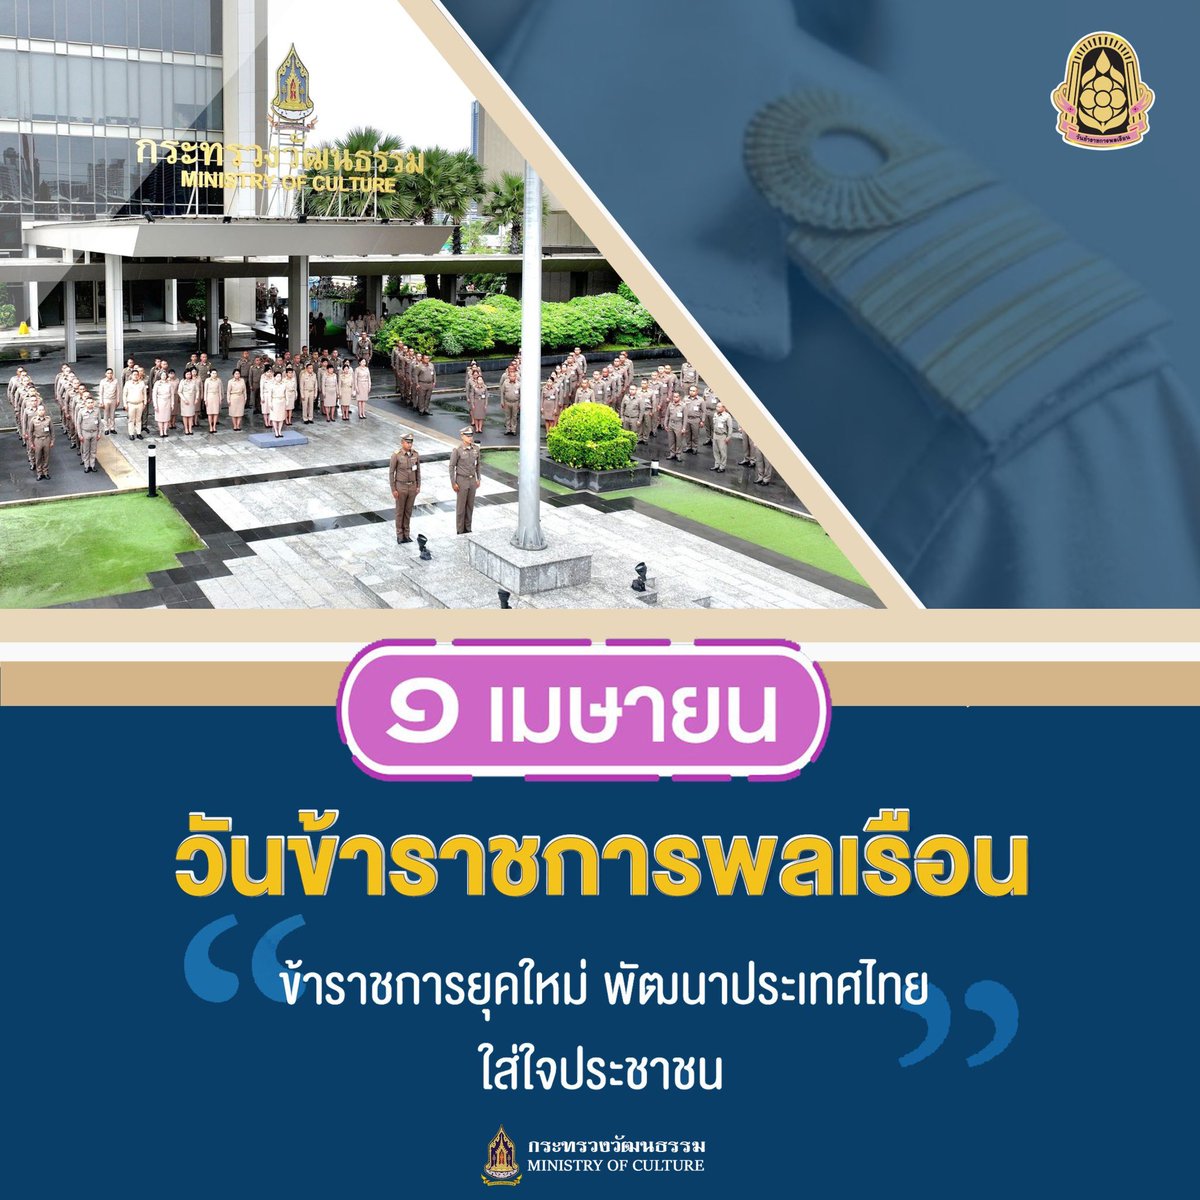 ๑ เมษายน วันข้าราชการพลเรือน “ข้าราชการยุคใหม่ พัฒนาประเทศไทย ใส่ใจประชาชน”